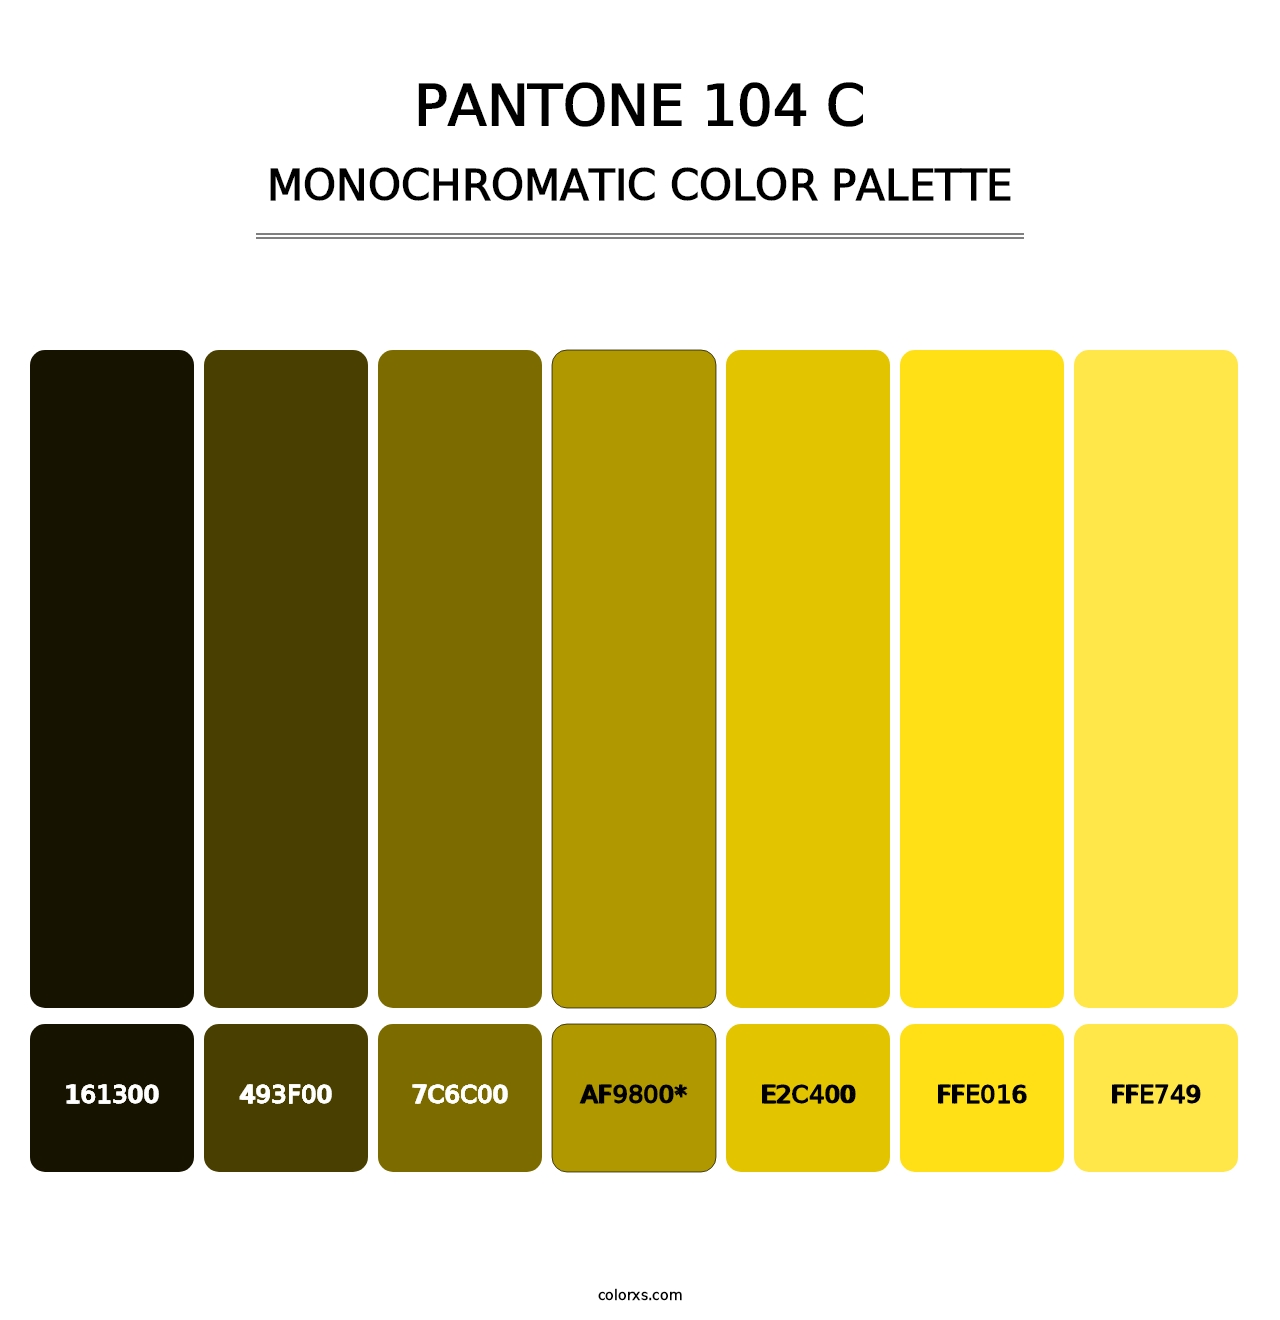 PANTONE 104 C - Monochromatic Color Palette